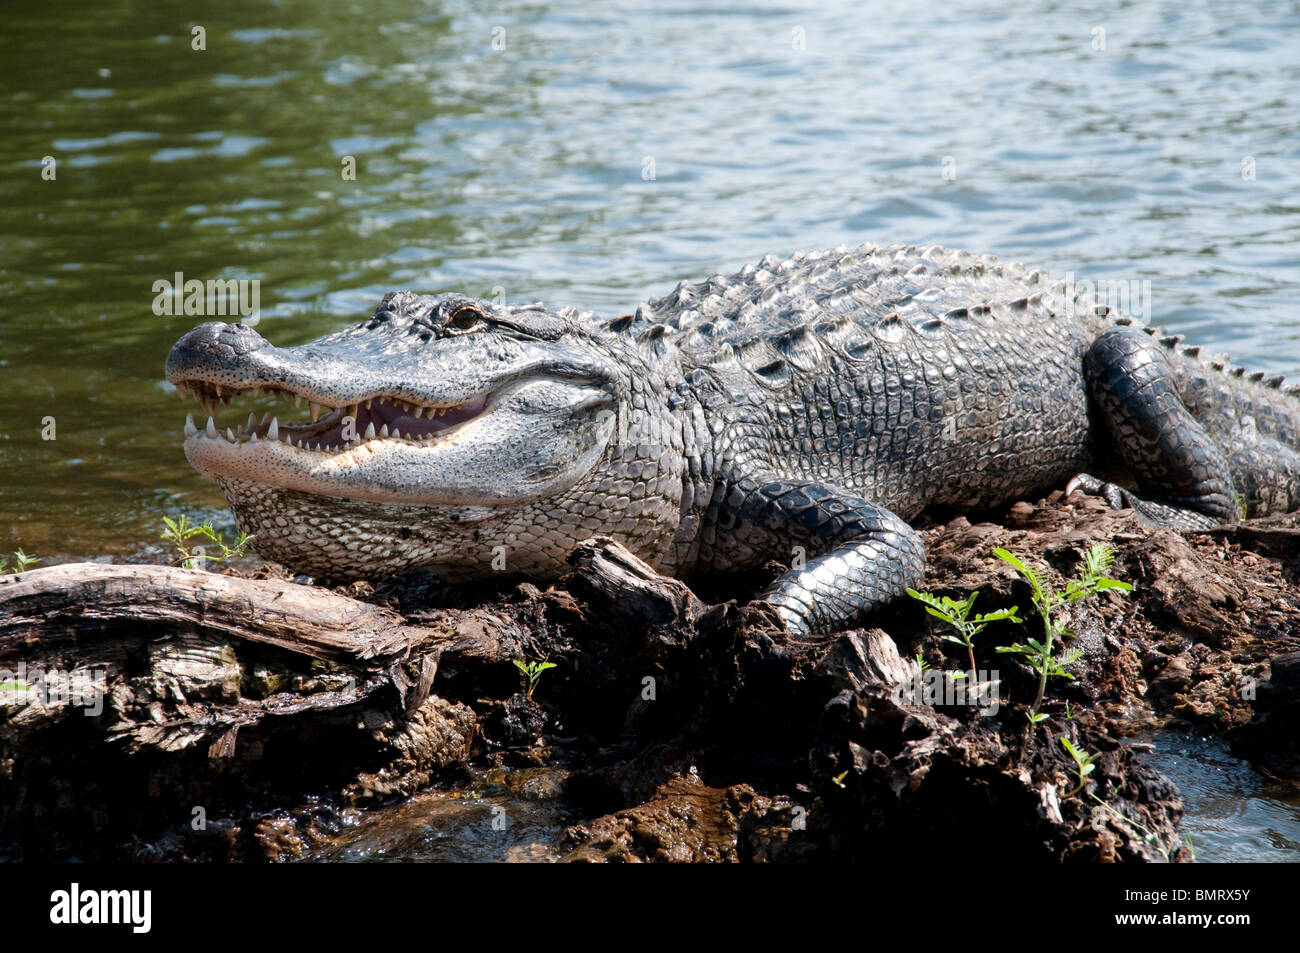 Eine wilde nach American alligator auf der Oberfläche von einem Sumpf im atchafalaya National Wildlife Refuge, im südlichen Louisiana, USA. Stockfoto